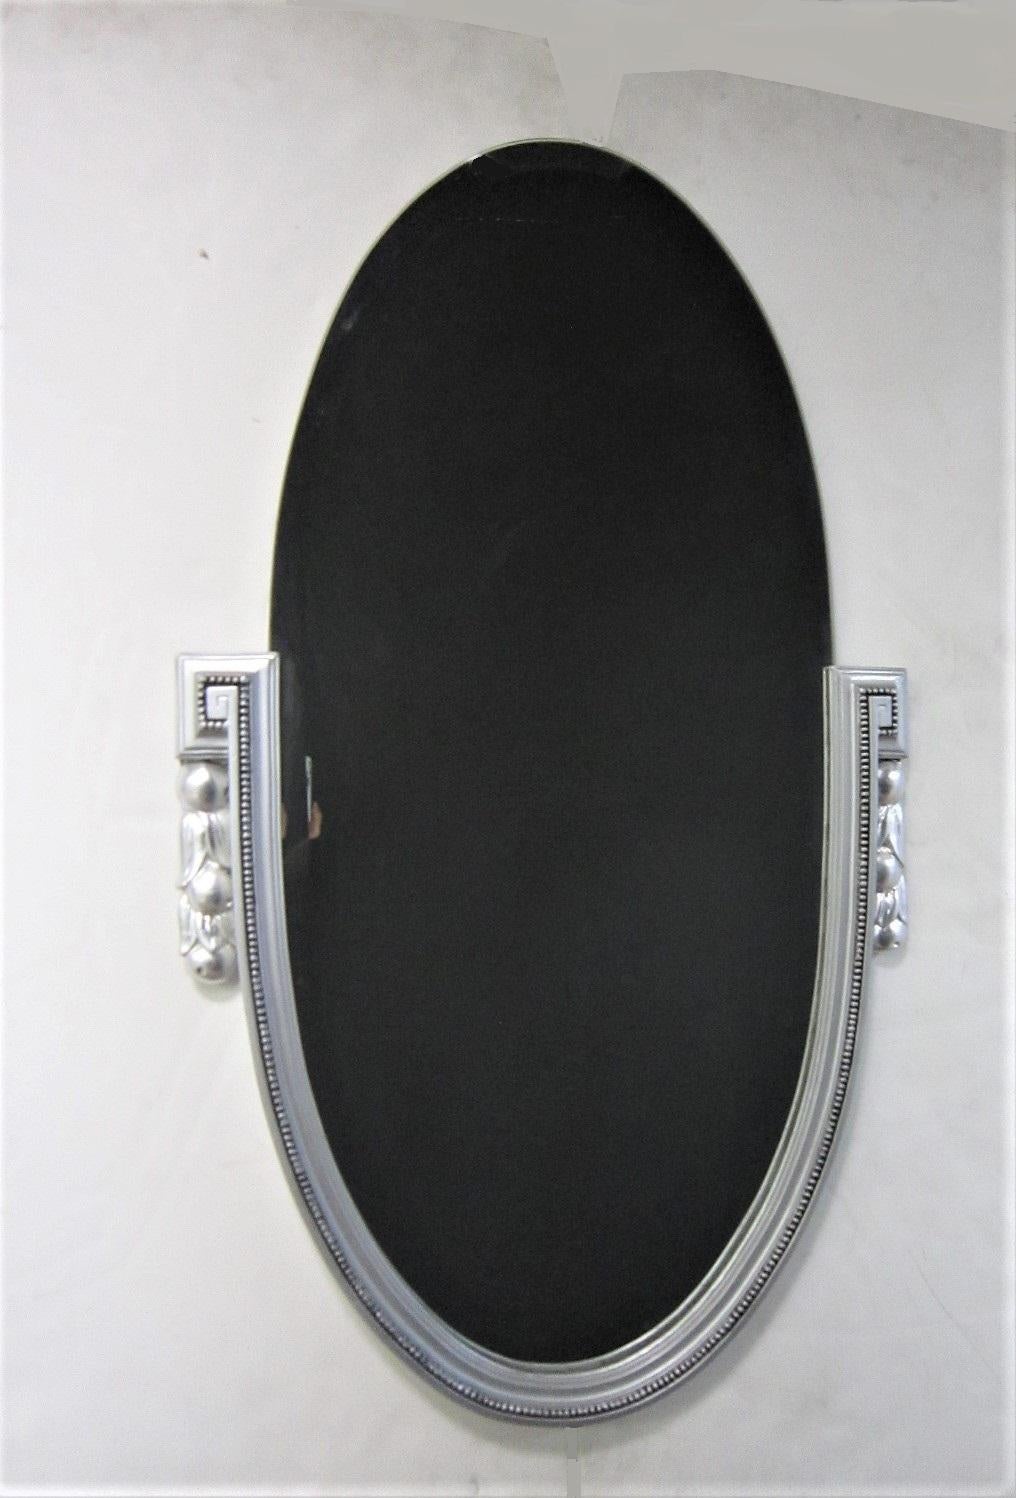 Ein eleganter versilberter Holz- und Gesso-Spiegel im französischen Art Déco-Stil, länglich-oval mit abgeschrägtem Spiegel-Einsatz. Die Seiten, die beide Enden des weit abgeschrägten Spiegels flankieren, zeigen ein griechisches Schlüsselmotiv mit